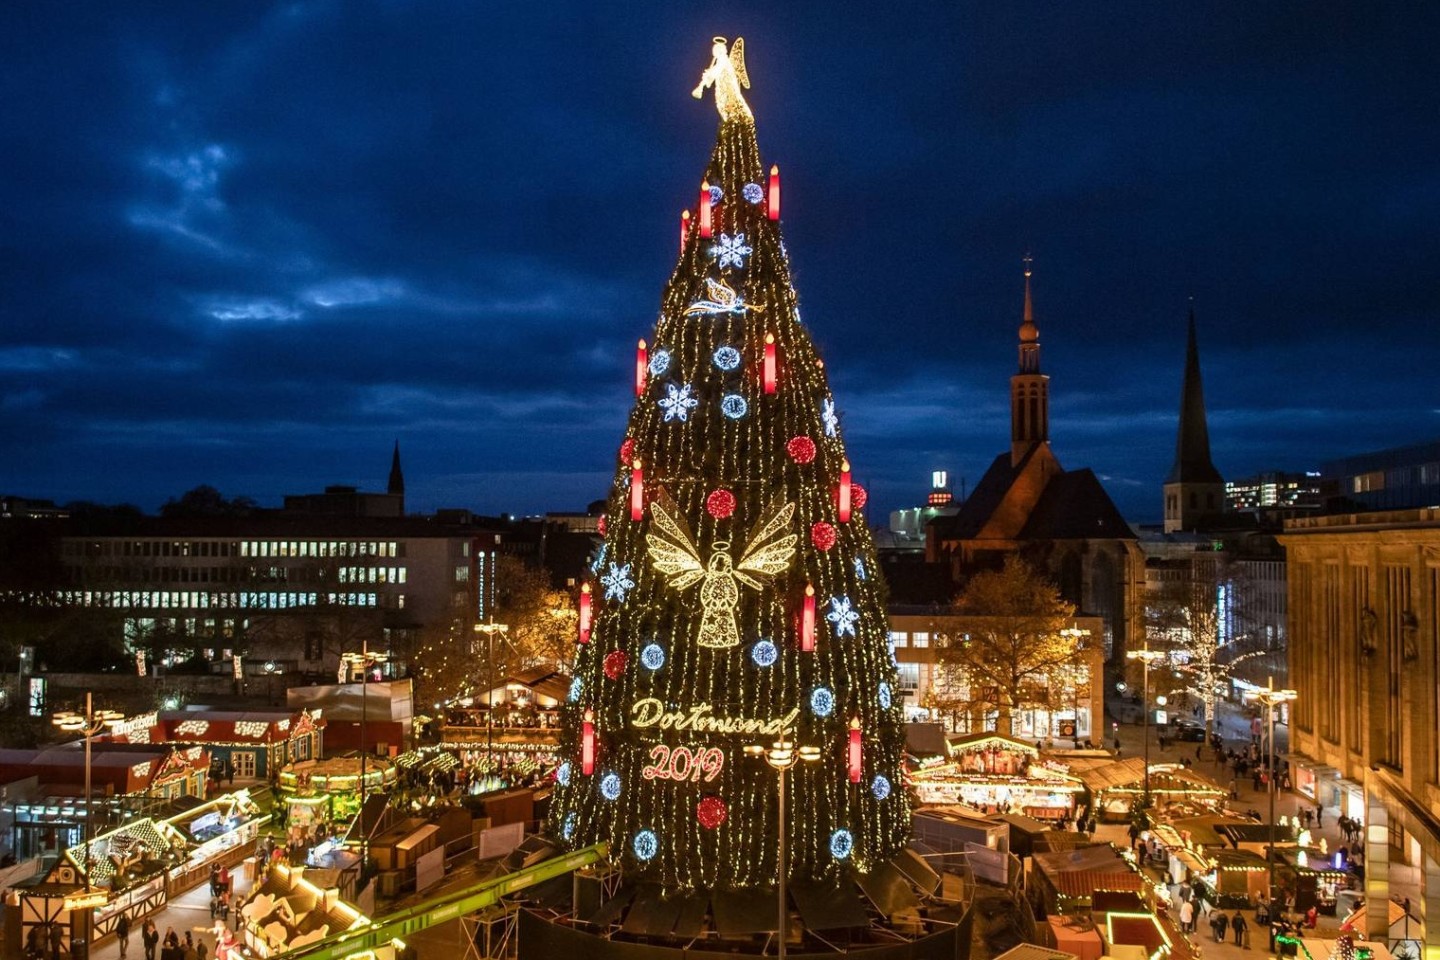 Dortmunder Weihnachtsstadt